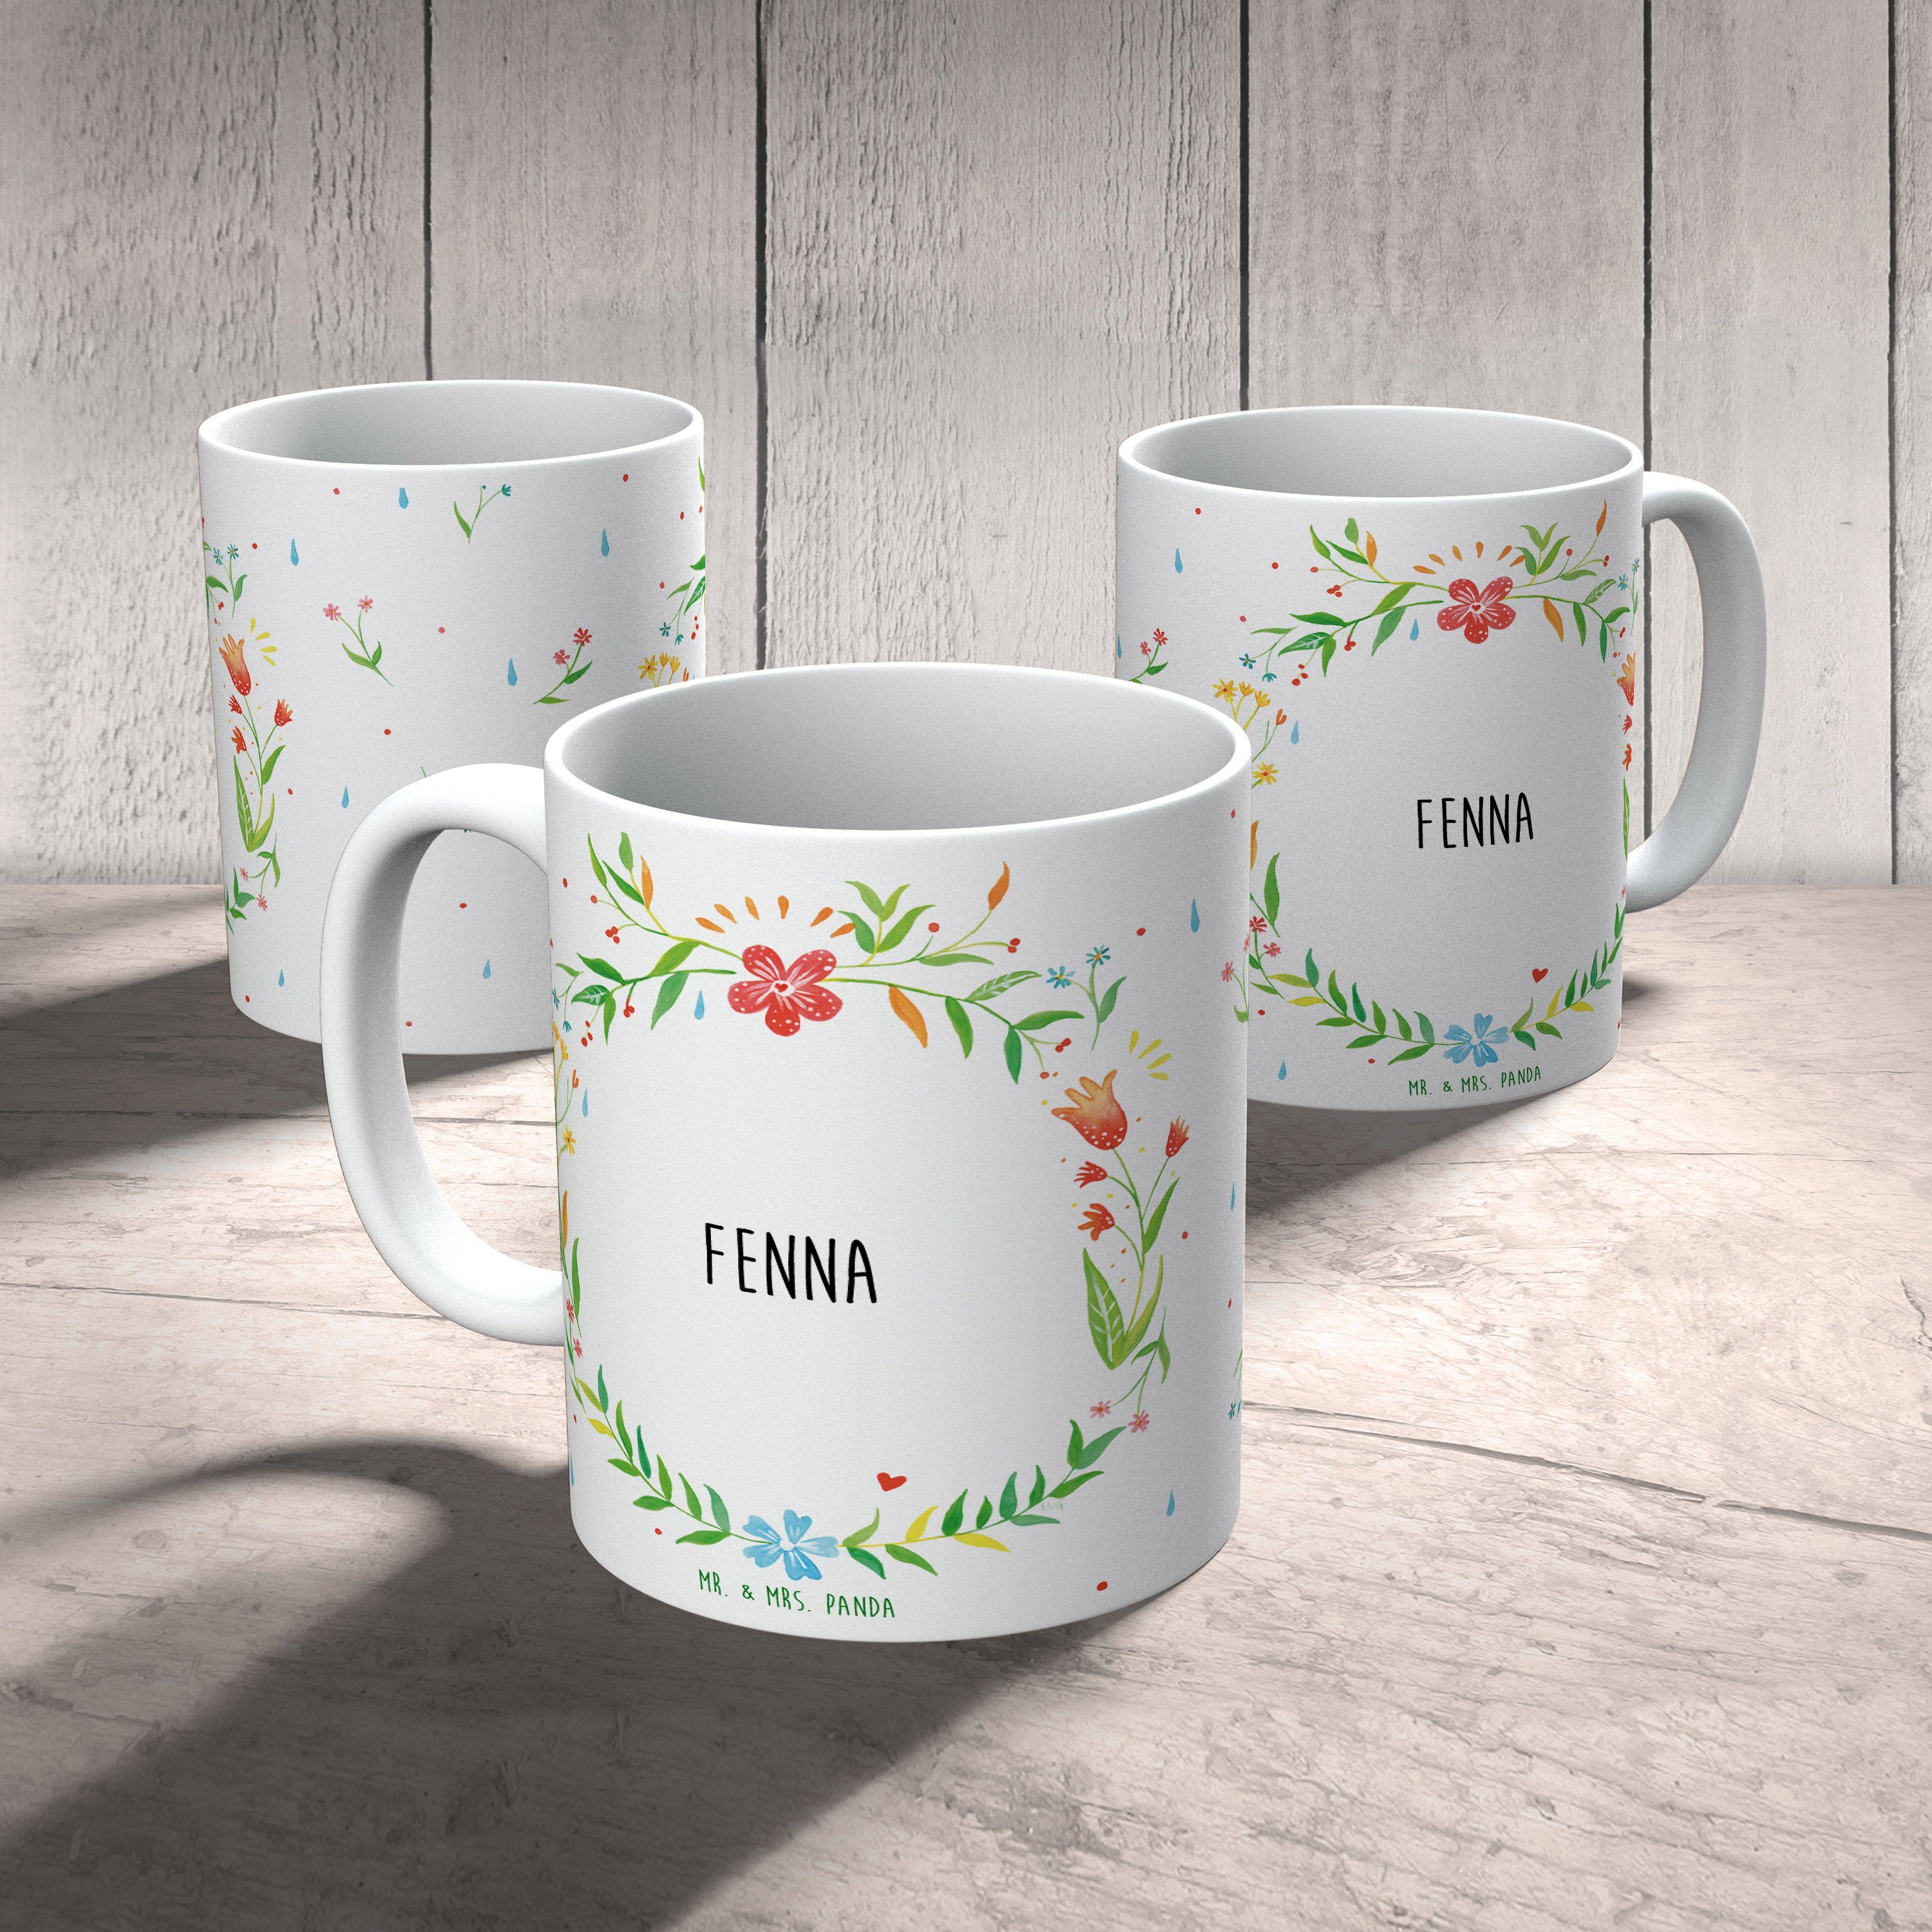 Geschenk, Mr. Mrs. Tasse, Tasse Sprüche, Kaffeebecher, Keramik Tasse Geschenk Panda Fenna - & Tasse,